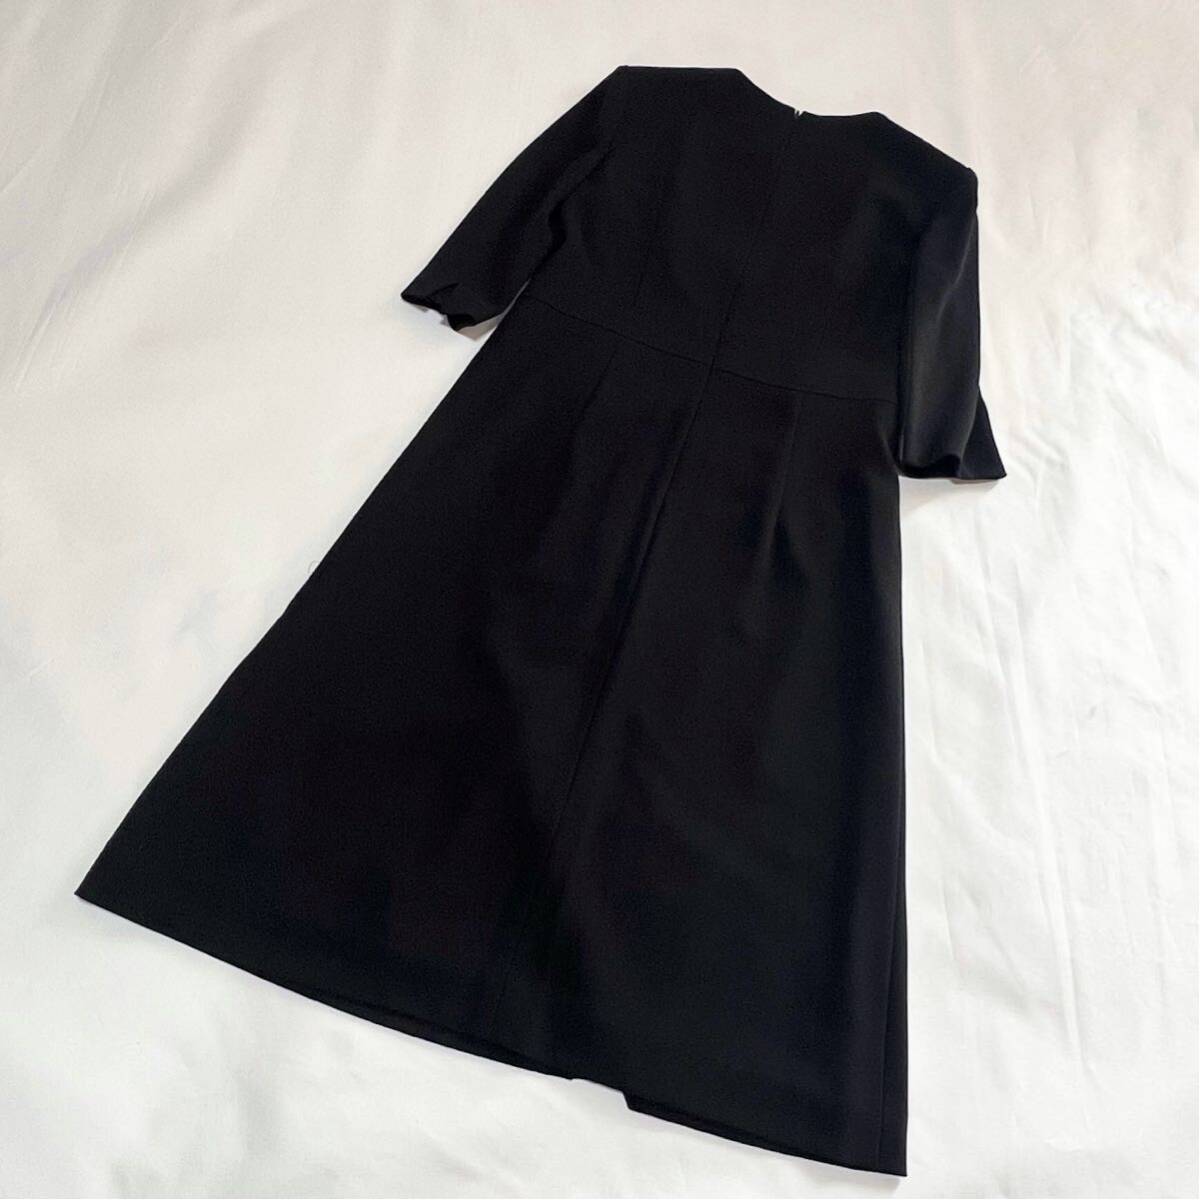  Tokyo IGINi серебристый LIUMA. одежда One-piece выставить черный черный формальный выставить траурный костюм чёрный праздничные обряды бесплатная доставка 